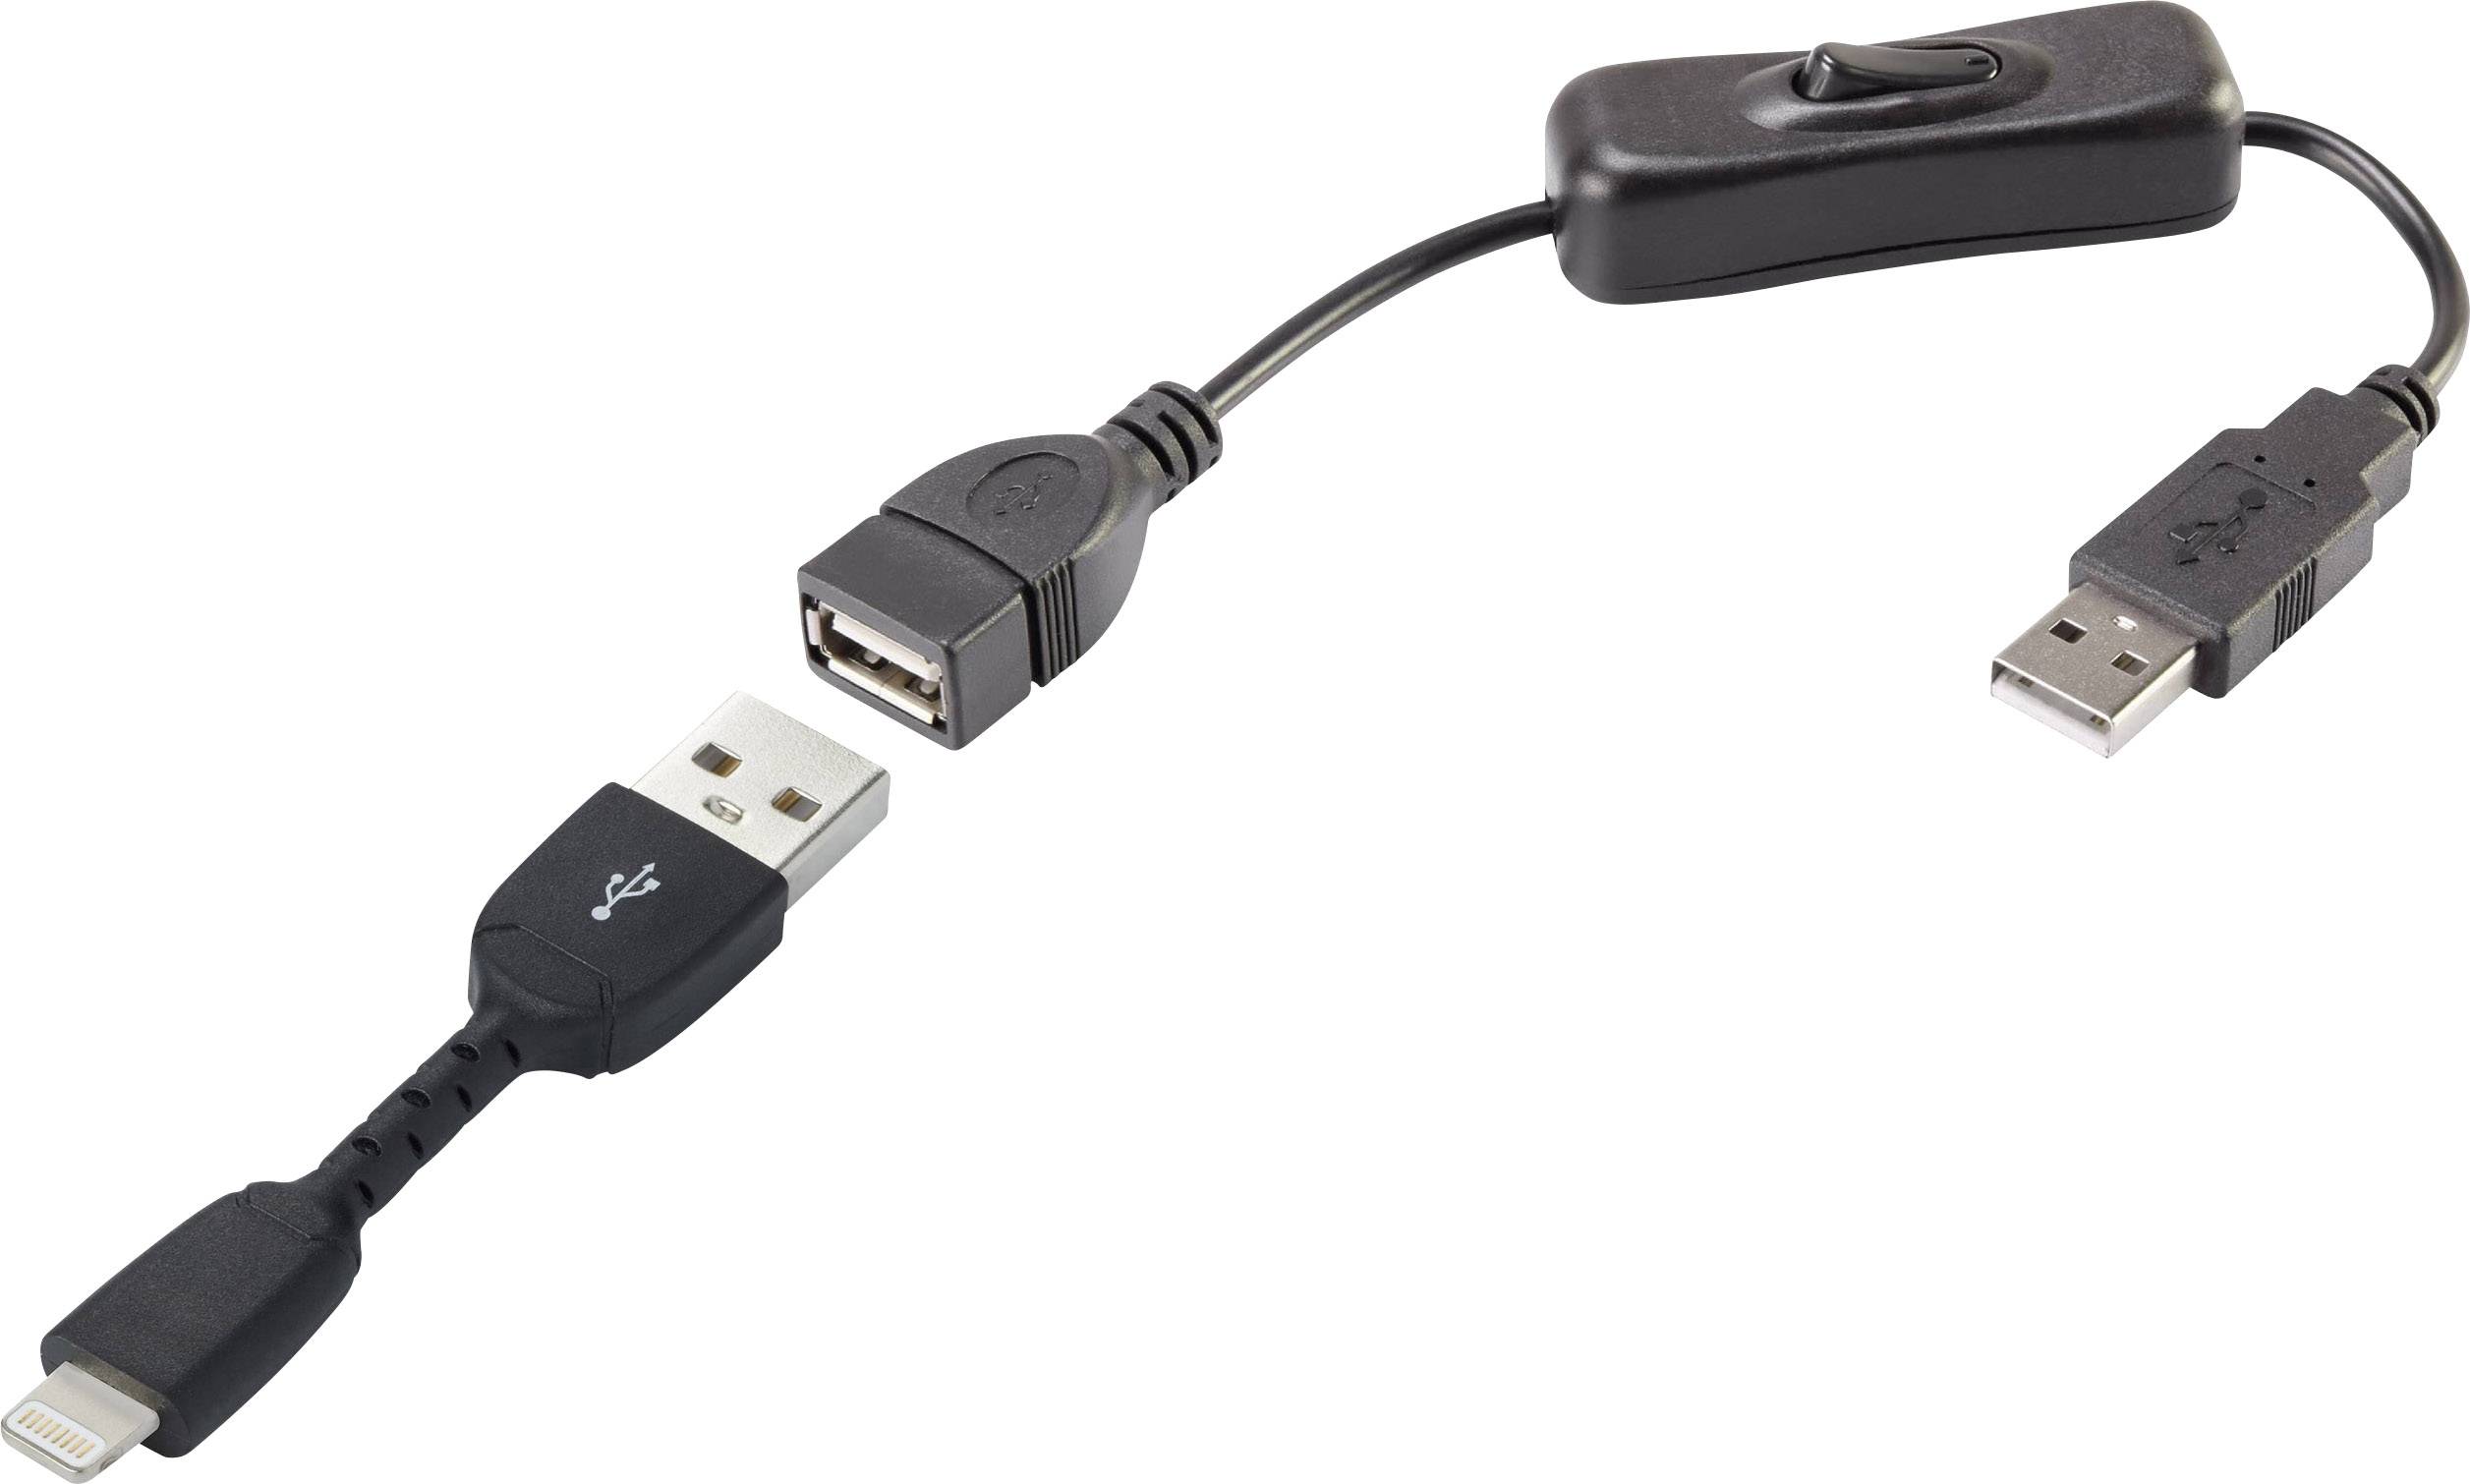 CONRAD Renkforce USB 2.0 Anschlusskabel [1x USB 2.0 Stecker A - 1x Apple Dock-Stecker Lightning] 0.3